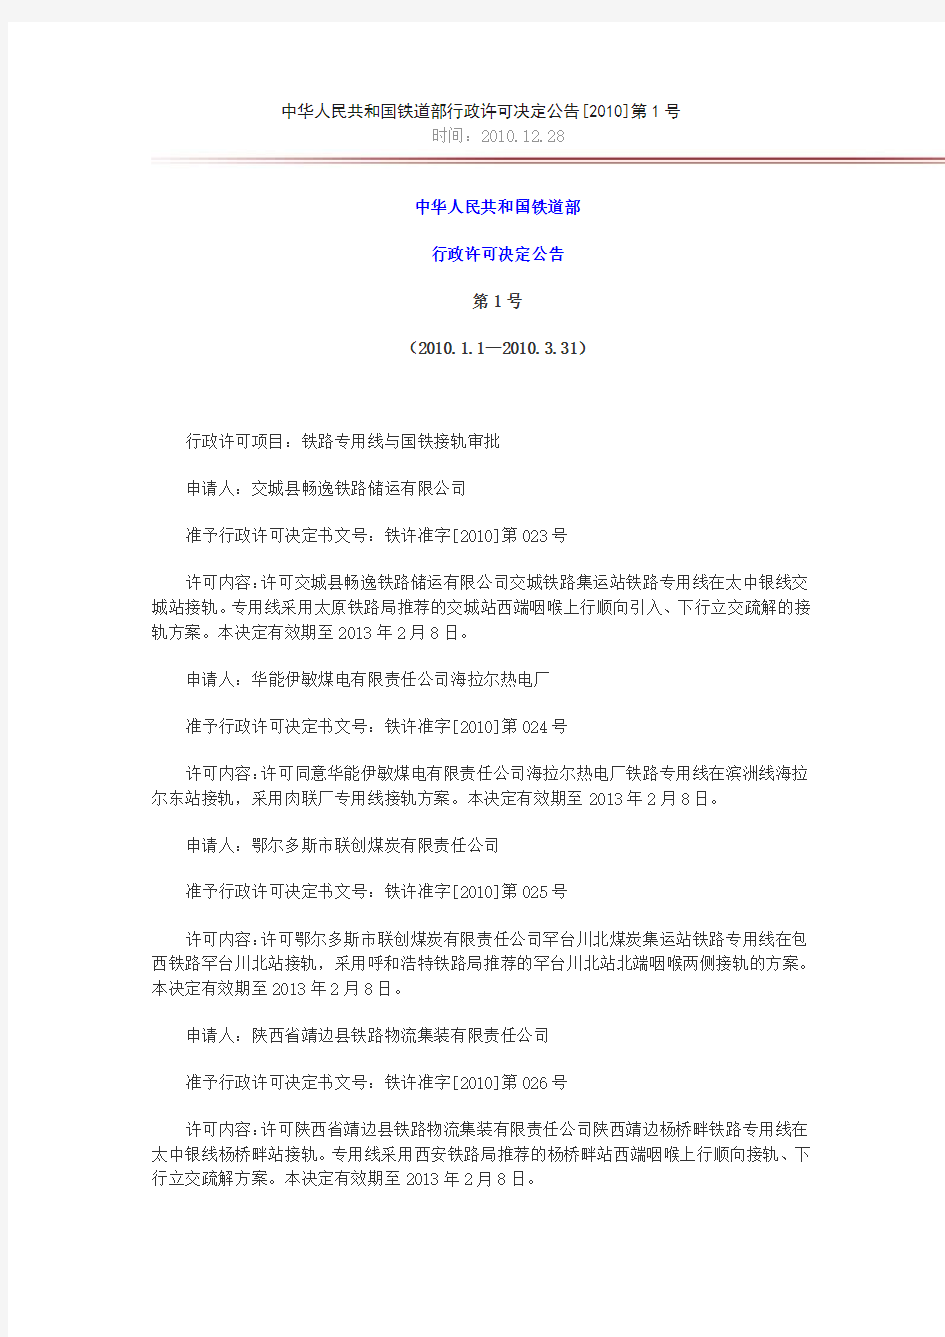 中华人民共和国铁道部行政许可决定公告[2010]第1号